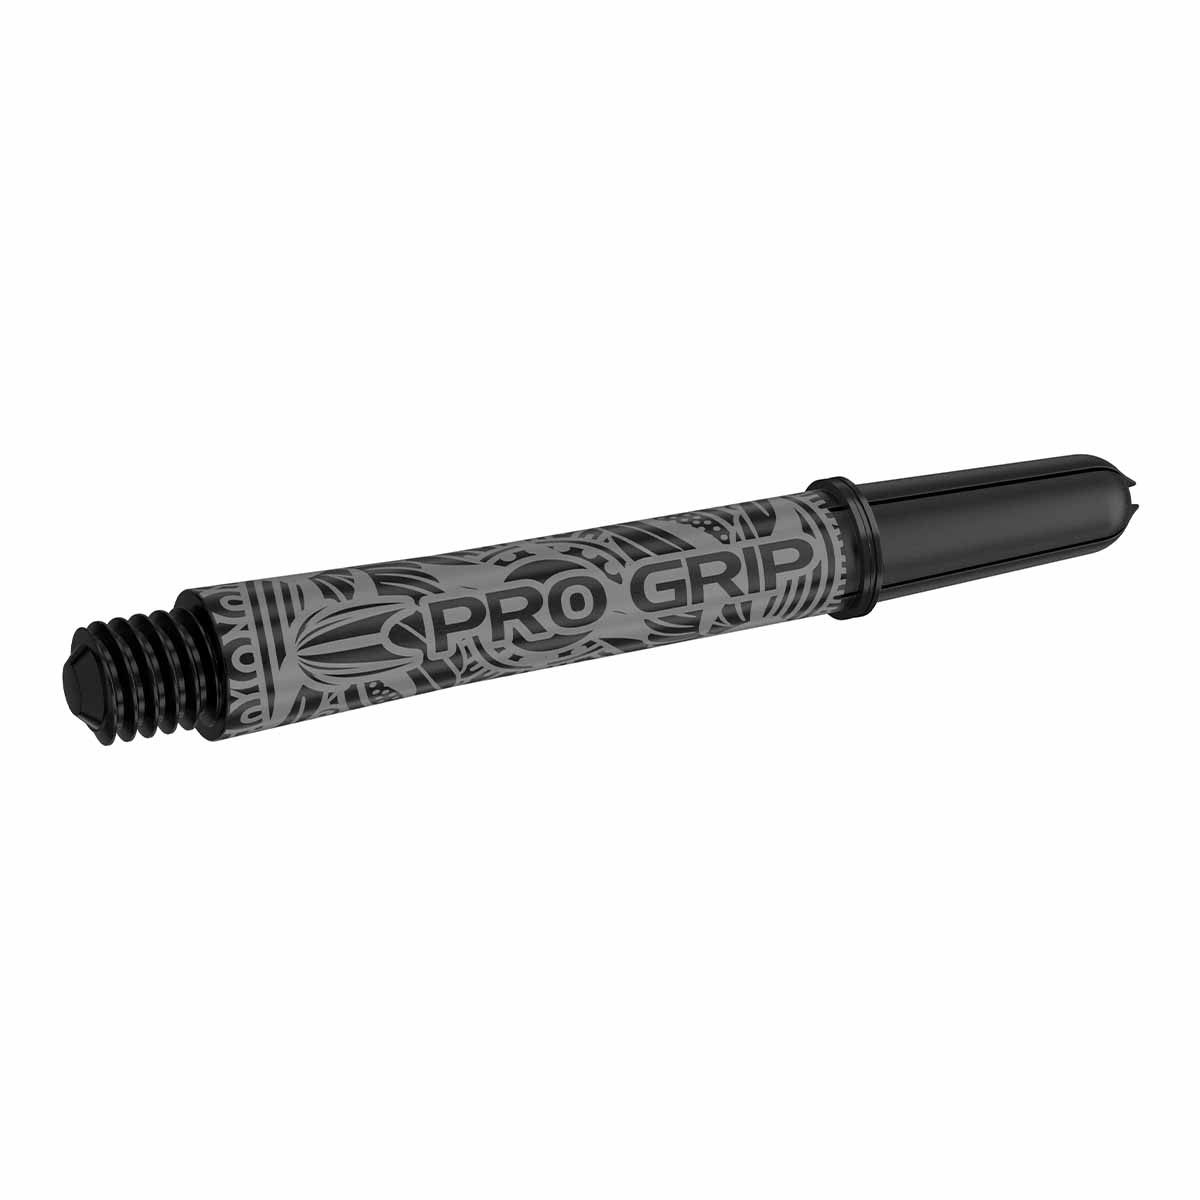 Target INK Pro Grip Shaft Black/Schwarz (versch. L?ngen) Medium 48 mm von TARGET